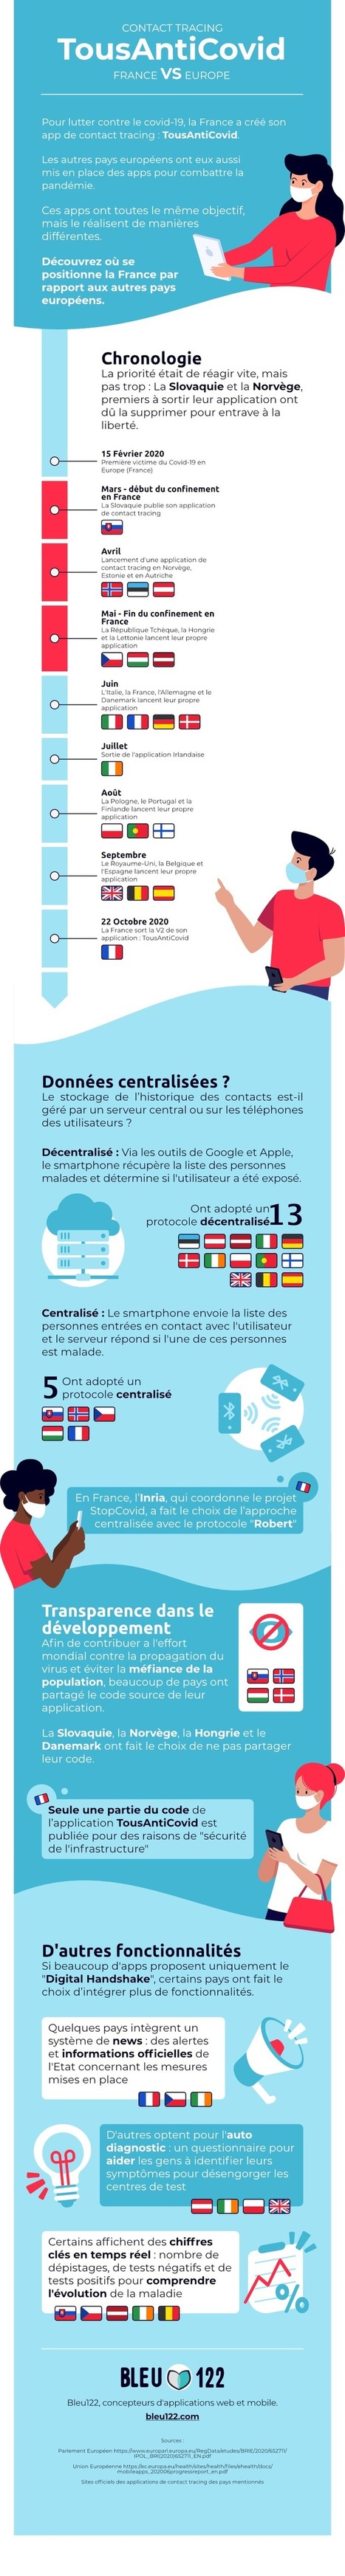 Tous AntiCovid : quel positionnement de la France par rapport à ses voisins européens ? | Digital infographics | Scoop.it